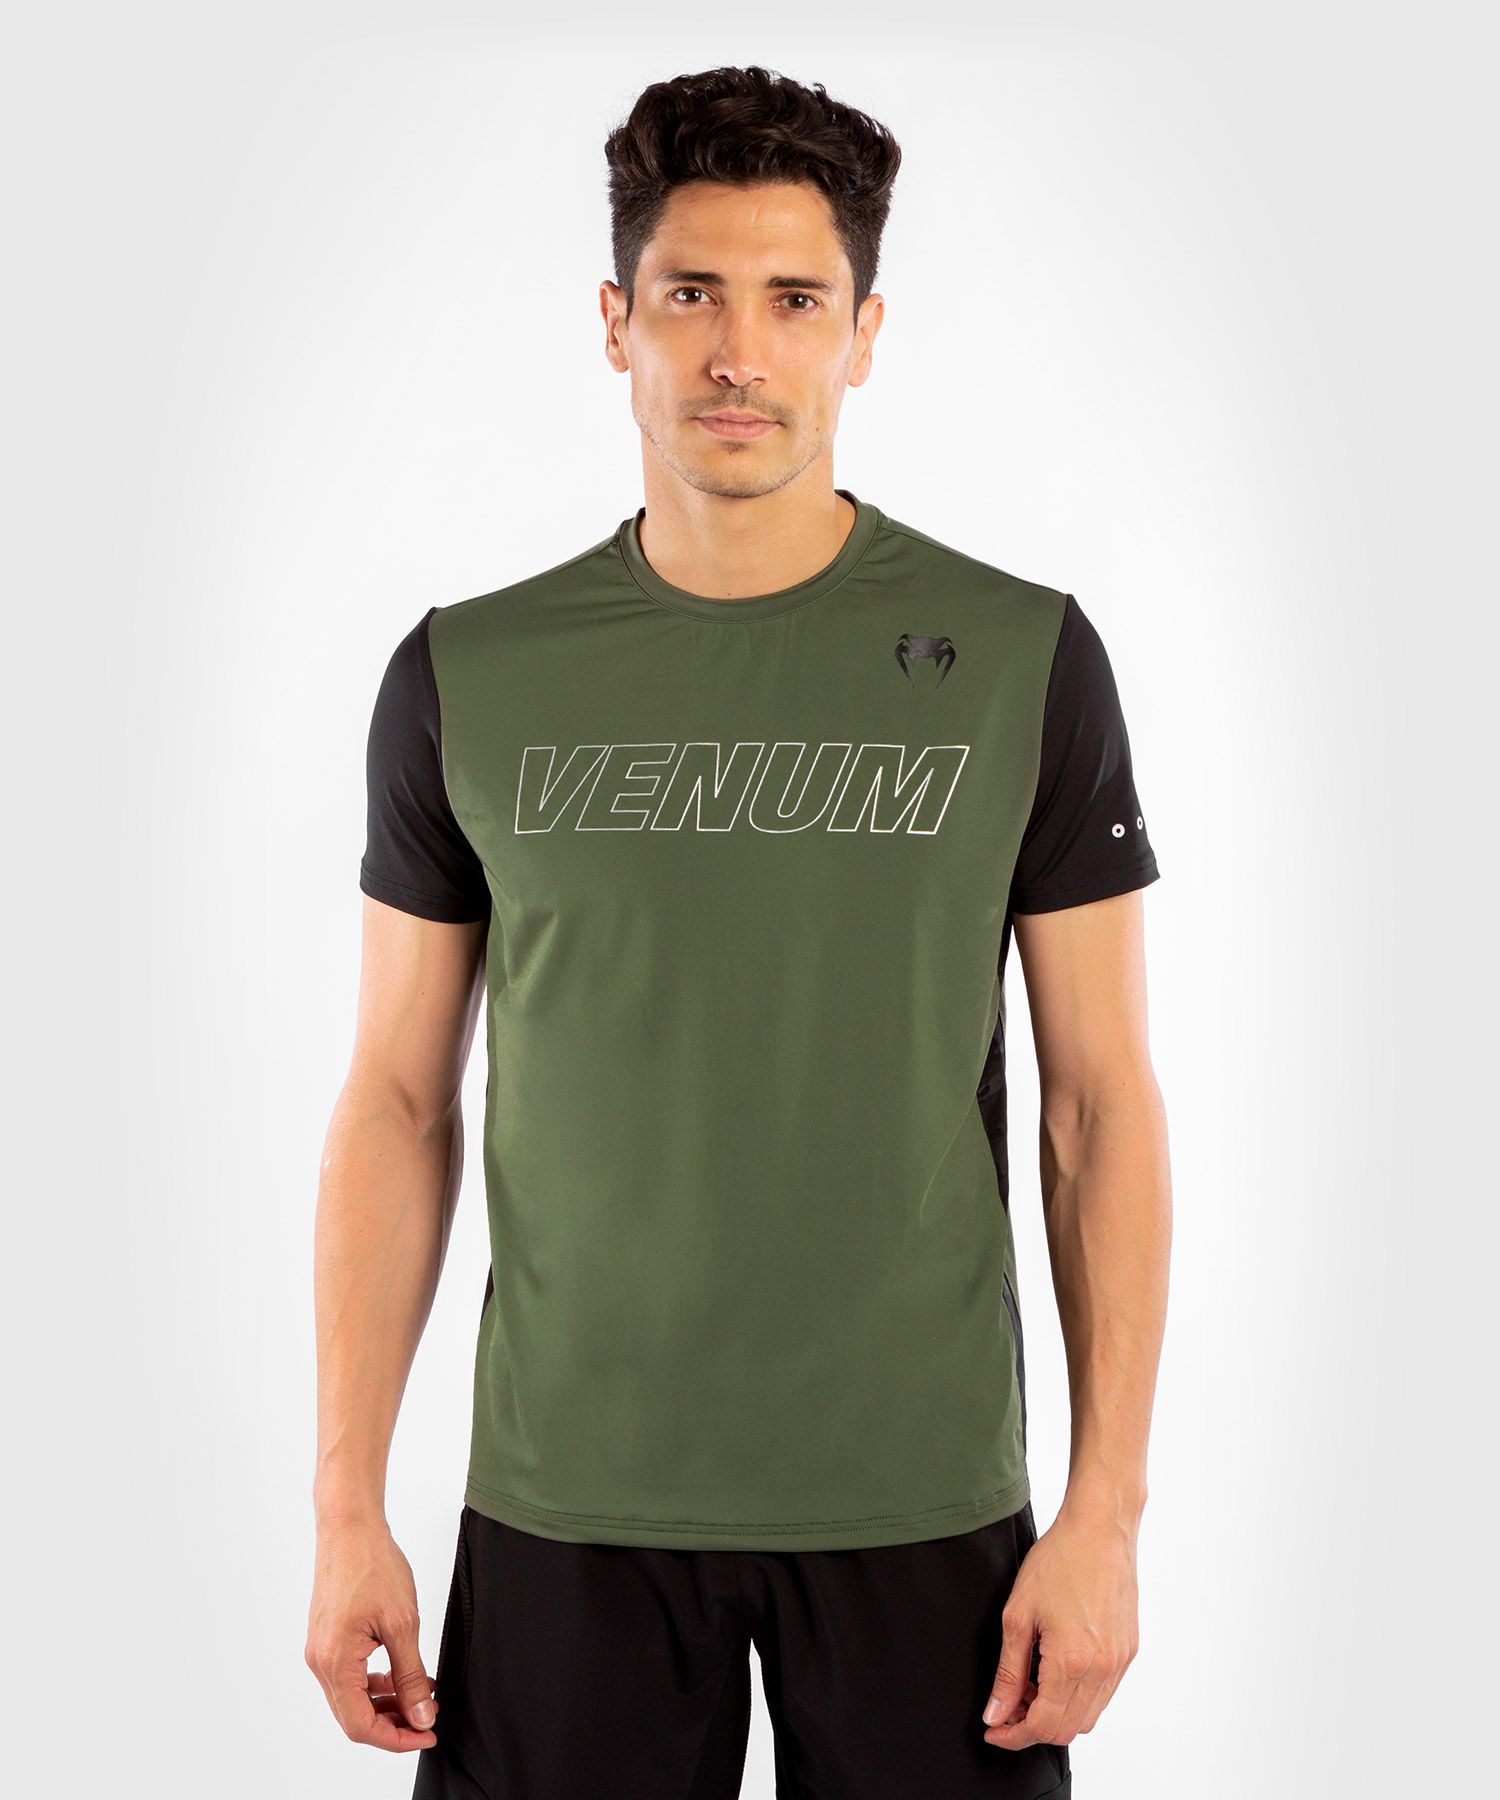 Camiseta Dry-Tech Venum Classic Evo - Caqui/Plata